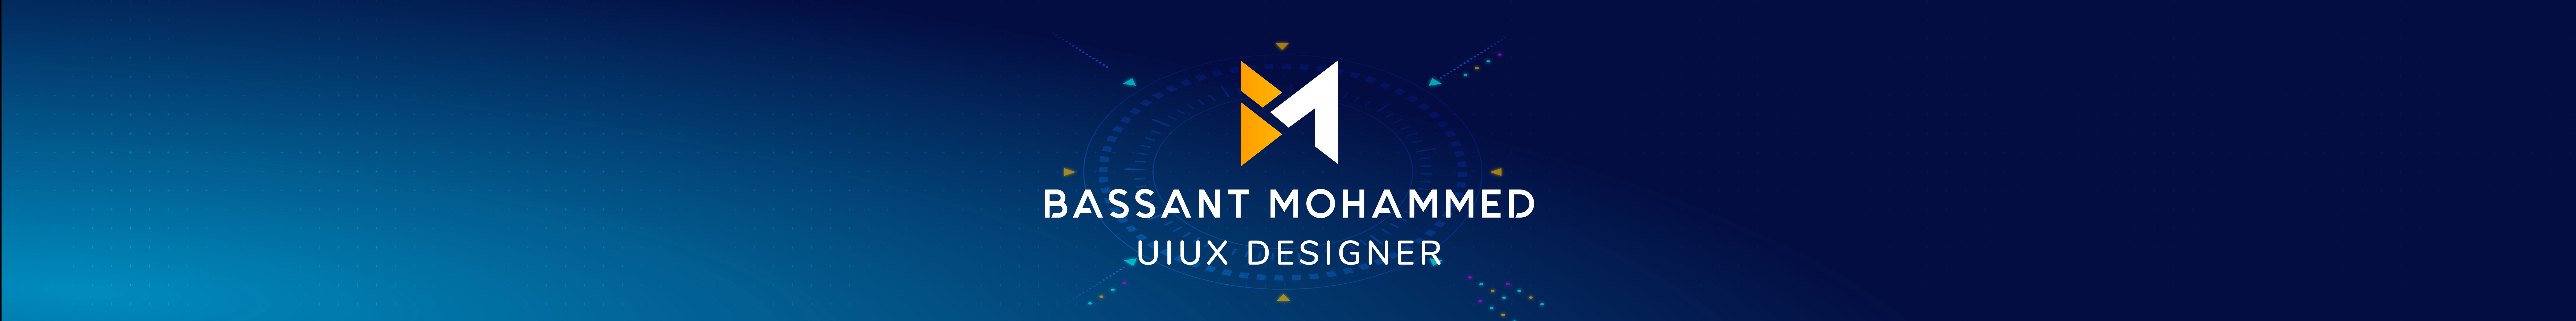 Bassant Mohammed's profile banner